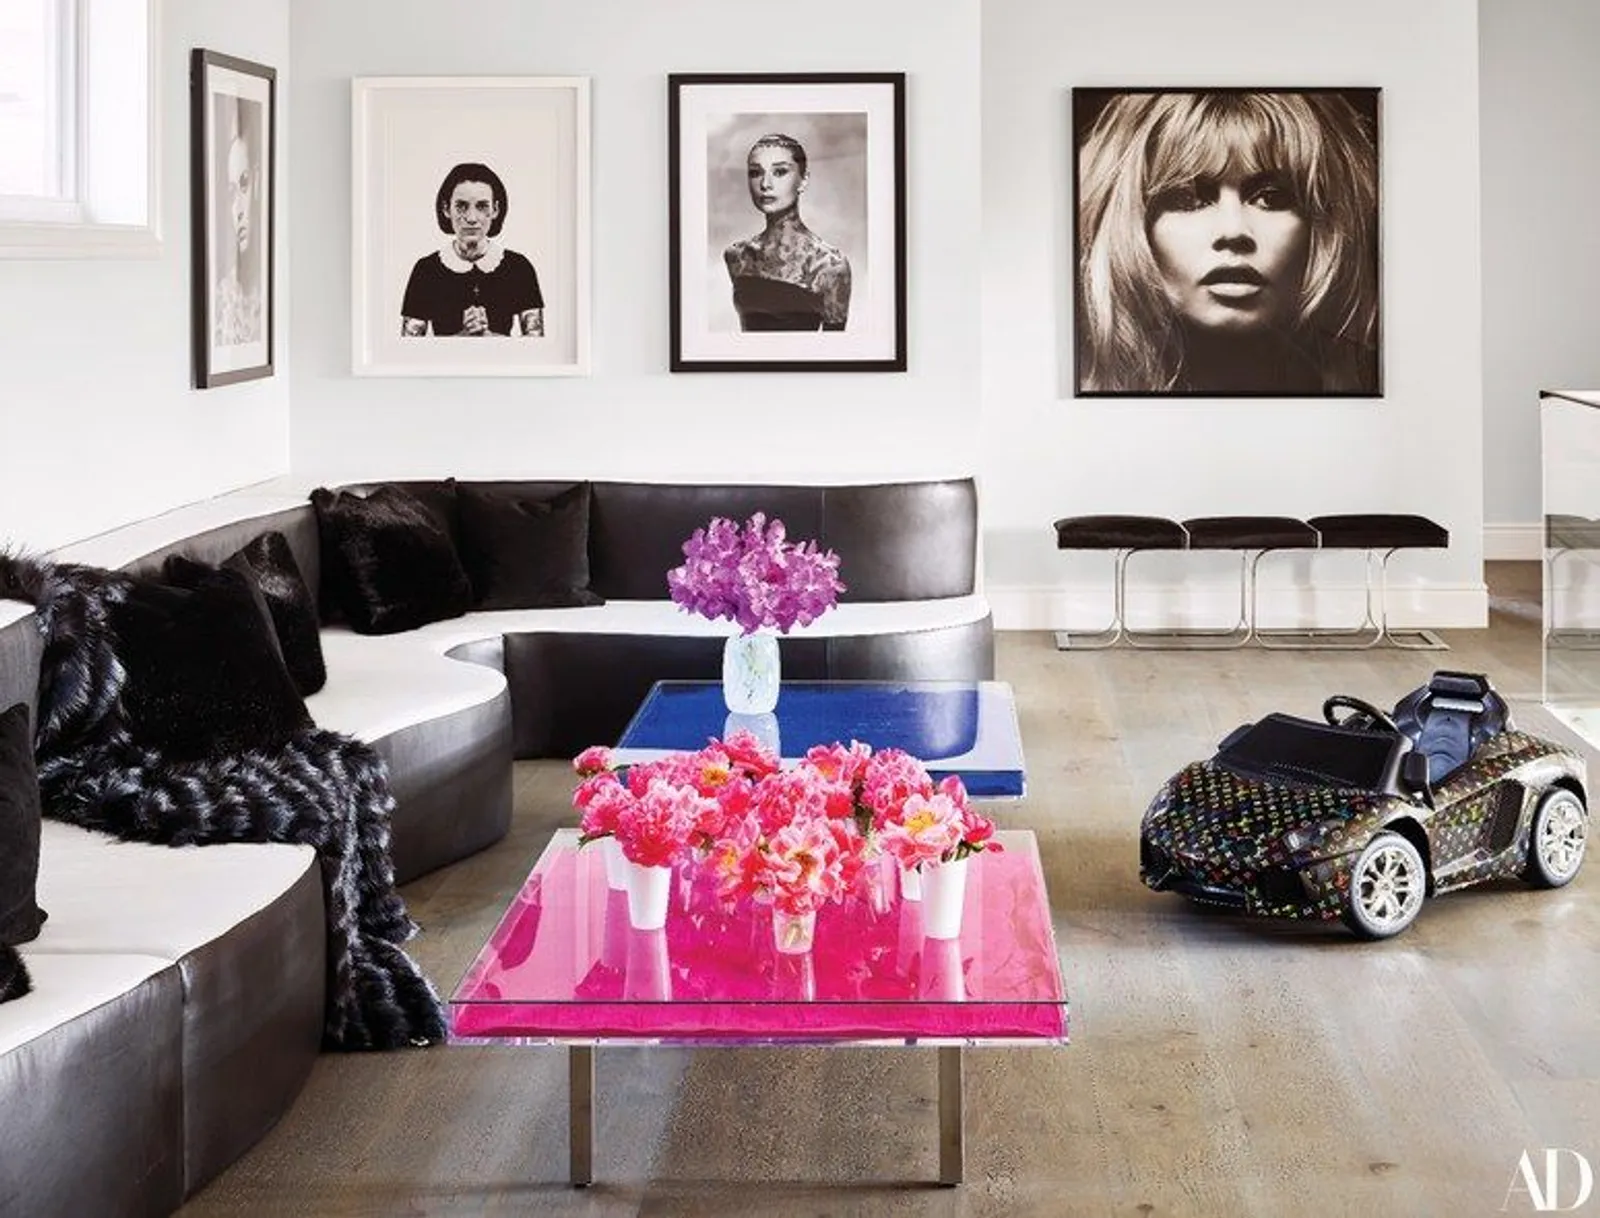 Rumah Kylie Jenner Dihiasi Artwork Harga Miliaran & Handuk Rp42 Juta